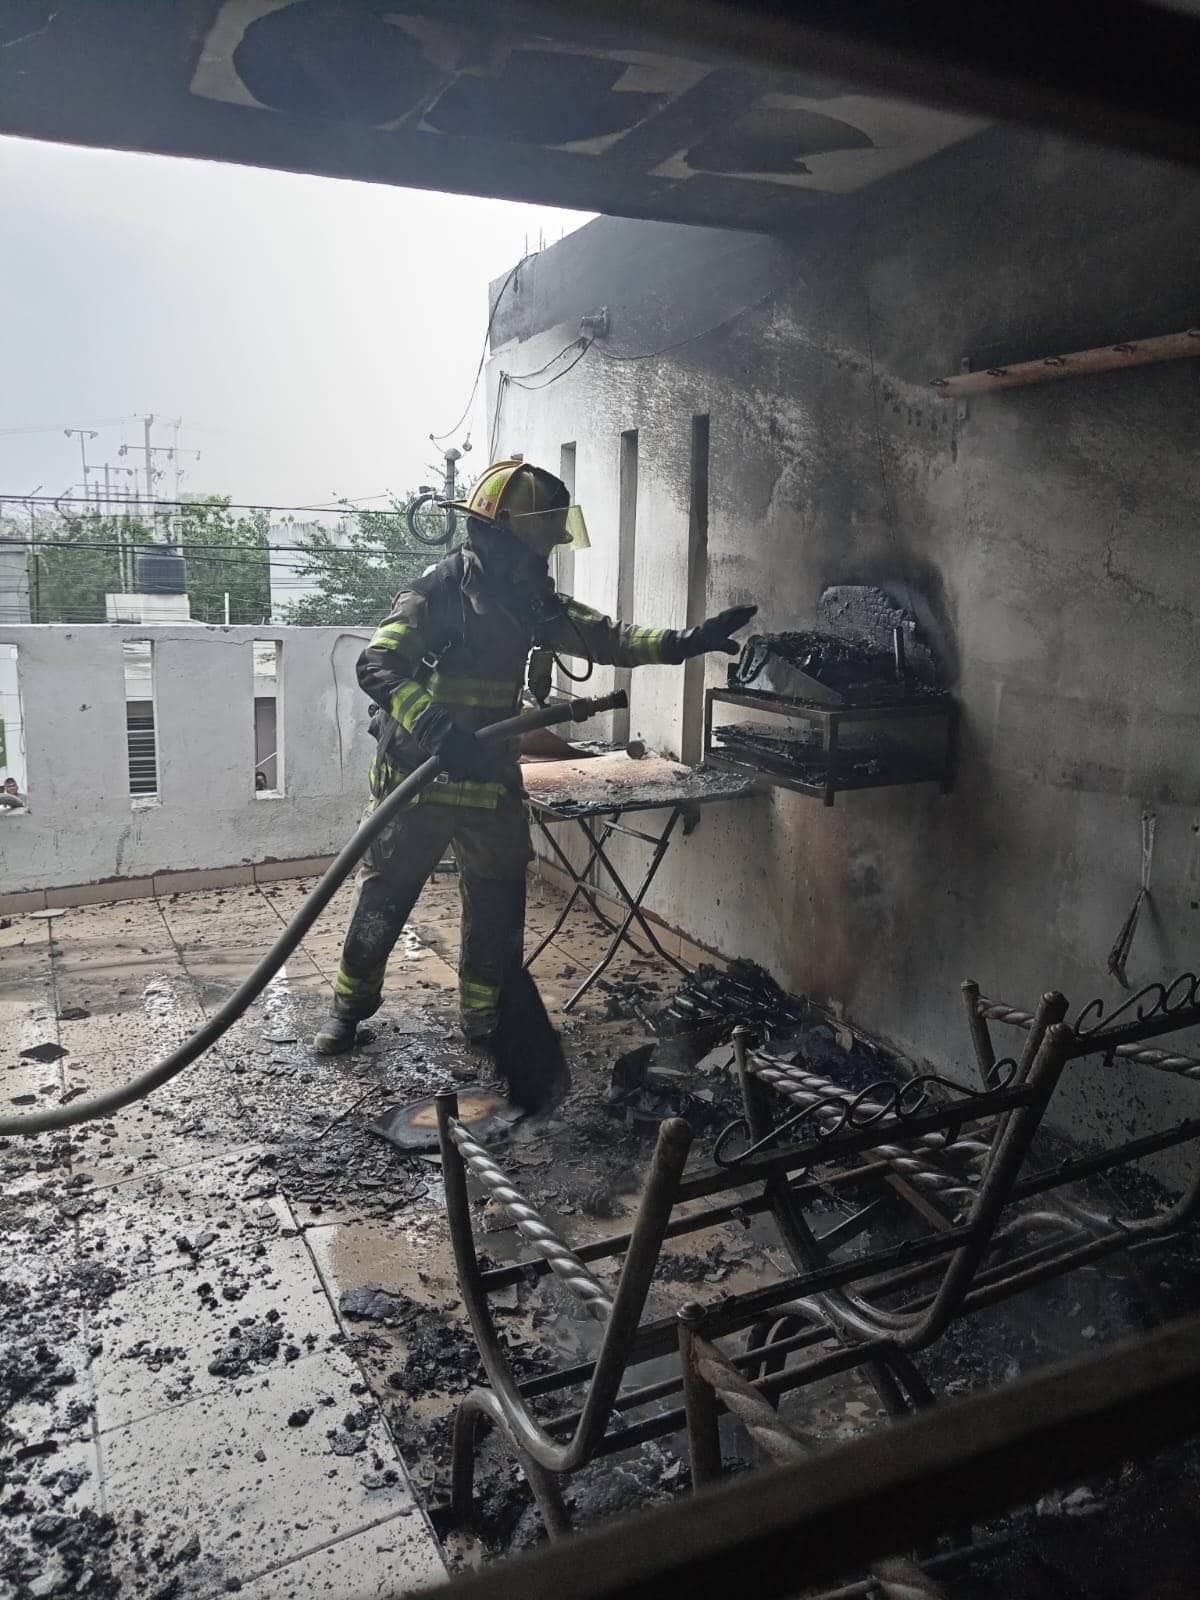 Una intensa movilización de los puestos de socorro se registró en el sector Solidaridad, al reportarse el incendio de una vivienda en el Barrio del Parque.